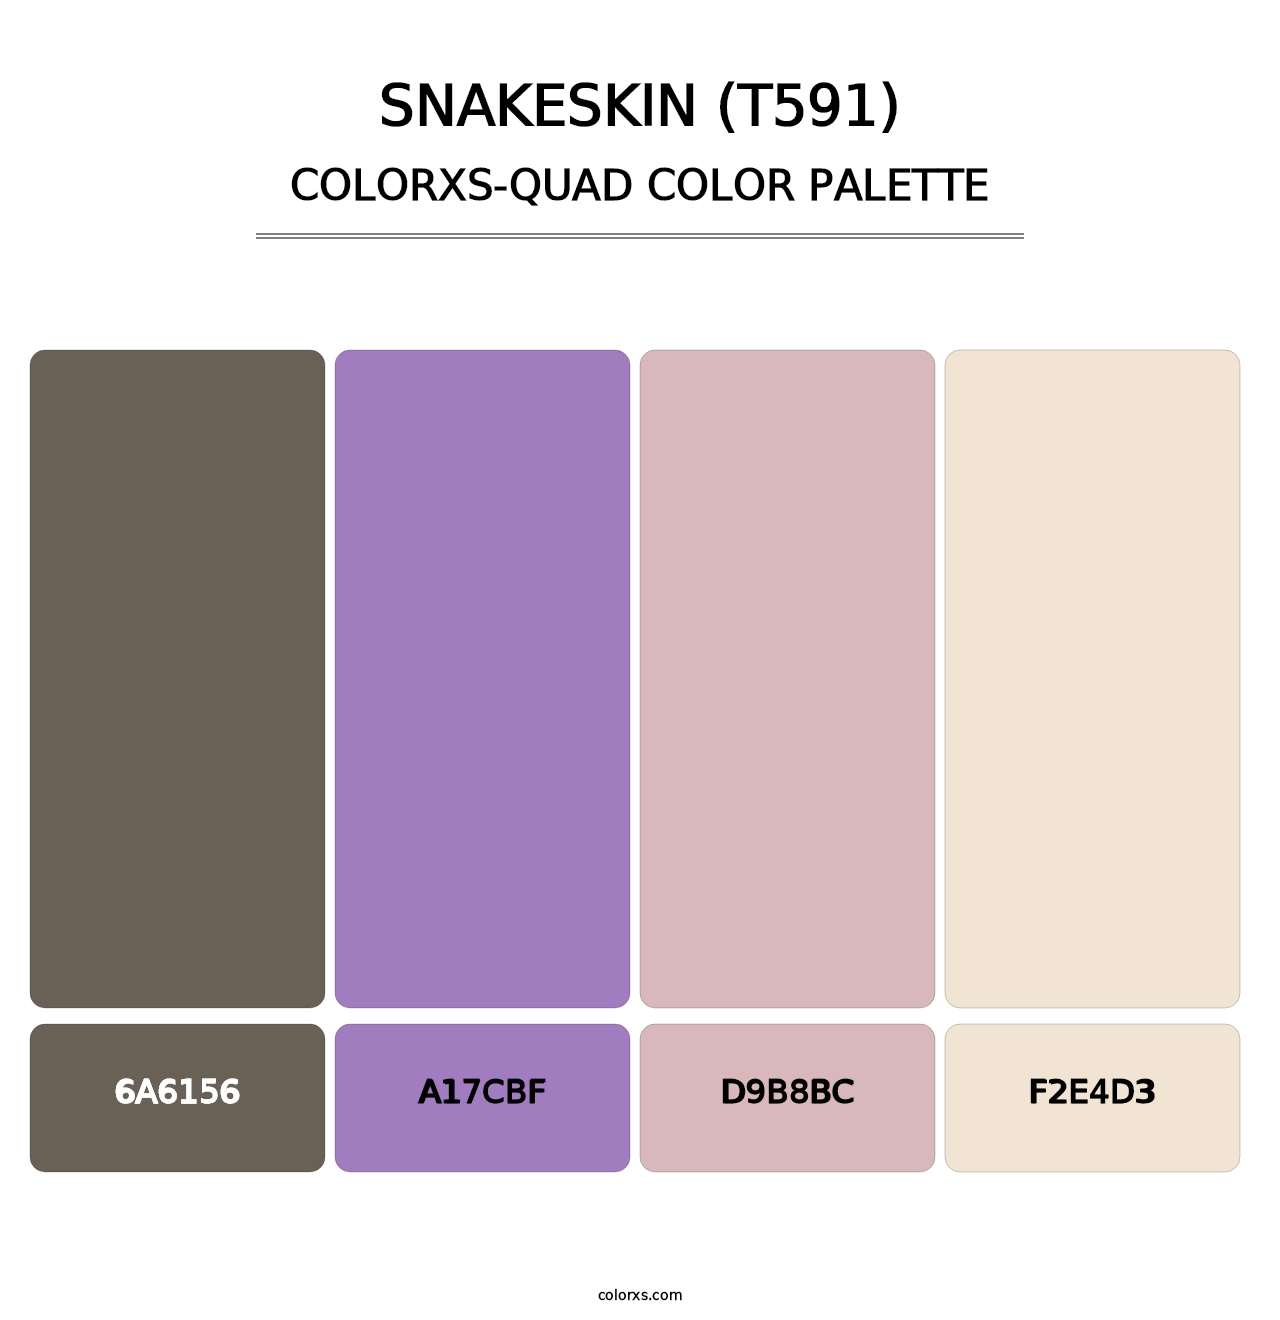 Snakeskin (T591) - Colorxs Quad Palette